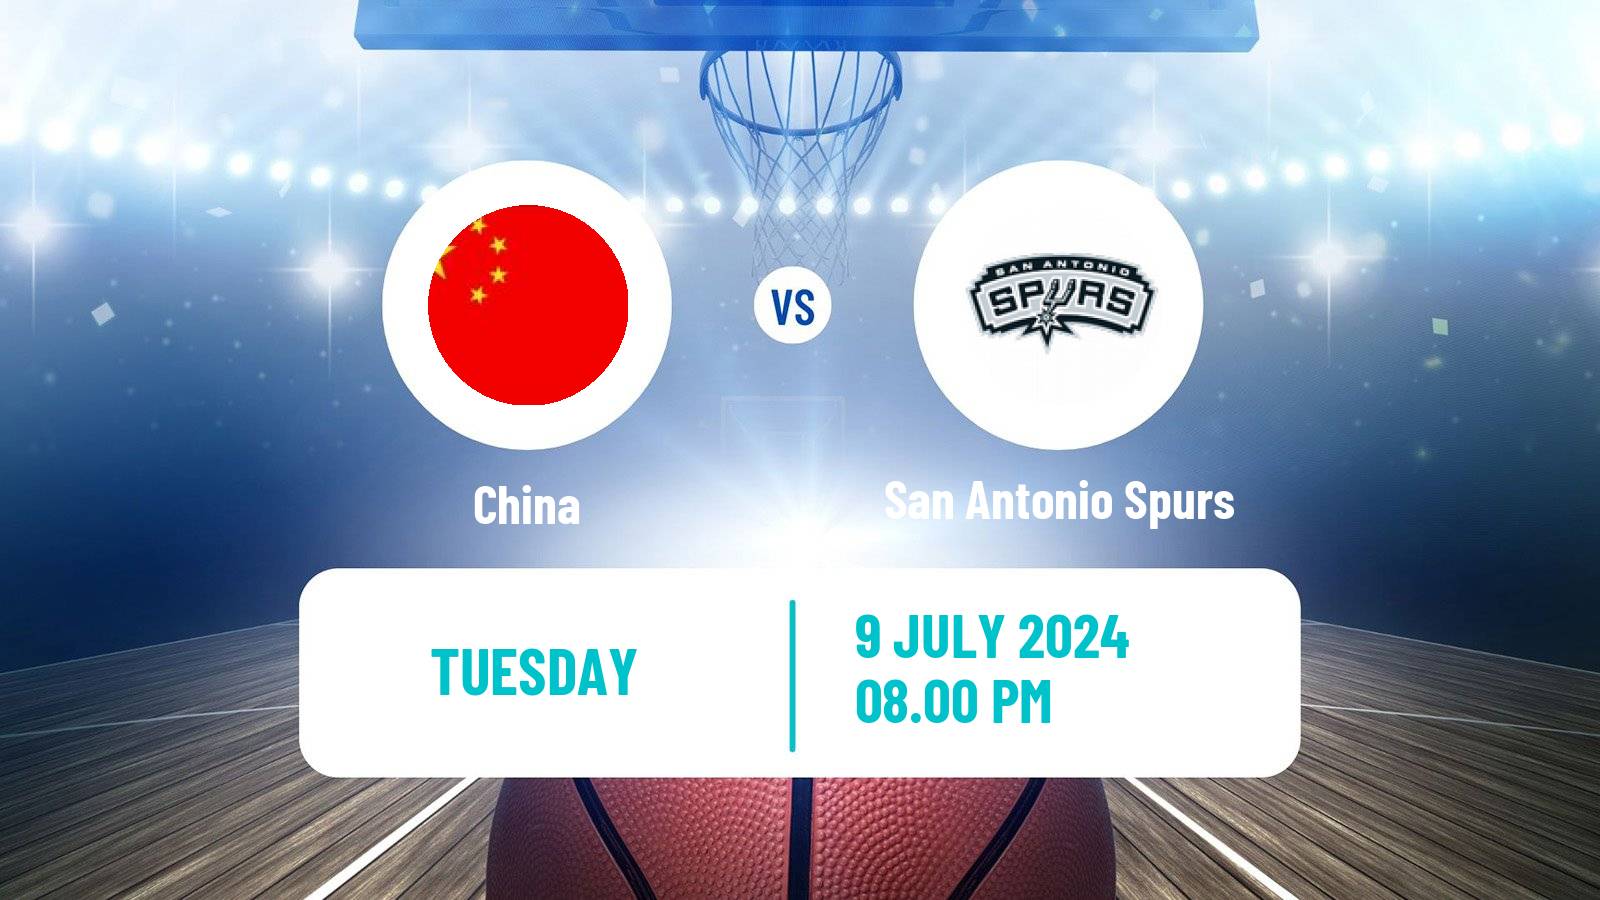 Basketball California Classic Basketball China - San Antonio Spurs